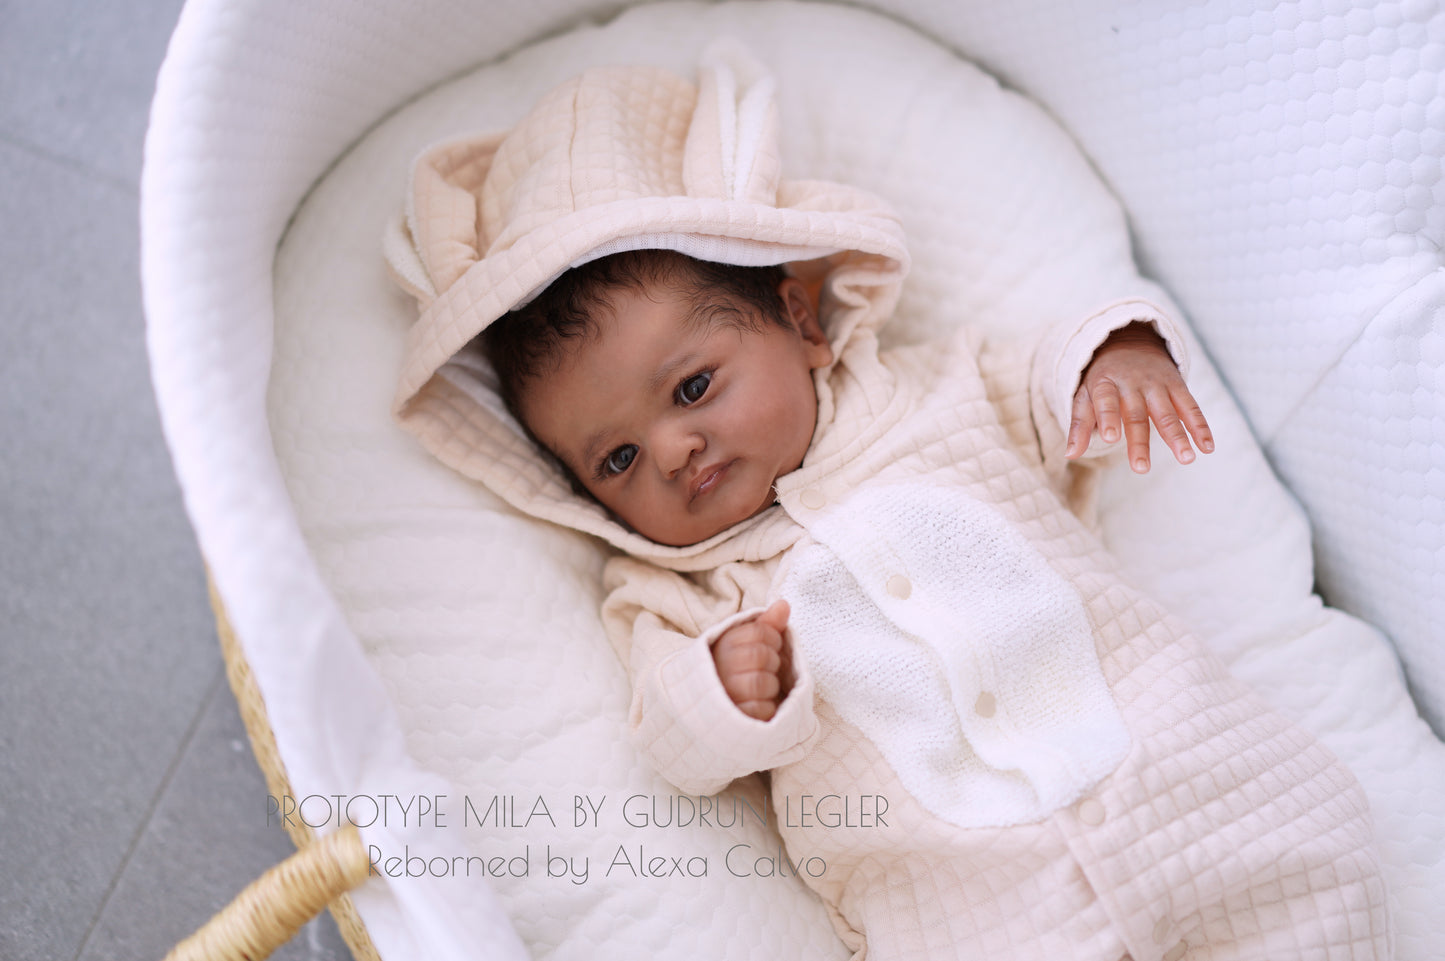 Baby Mila - Prototipo de Gudrun Legler, Reborn de Alexa Calvo